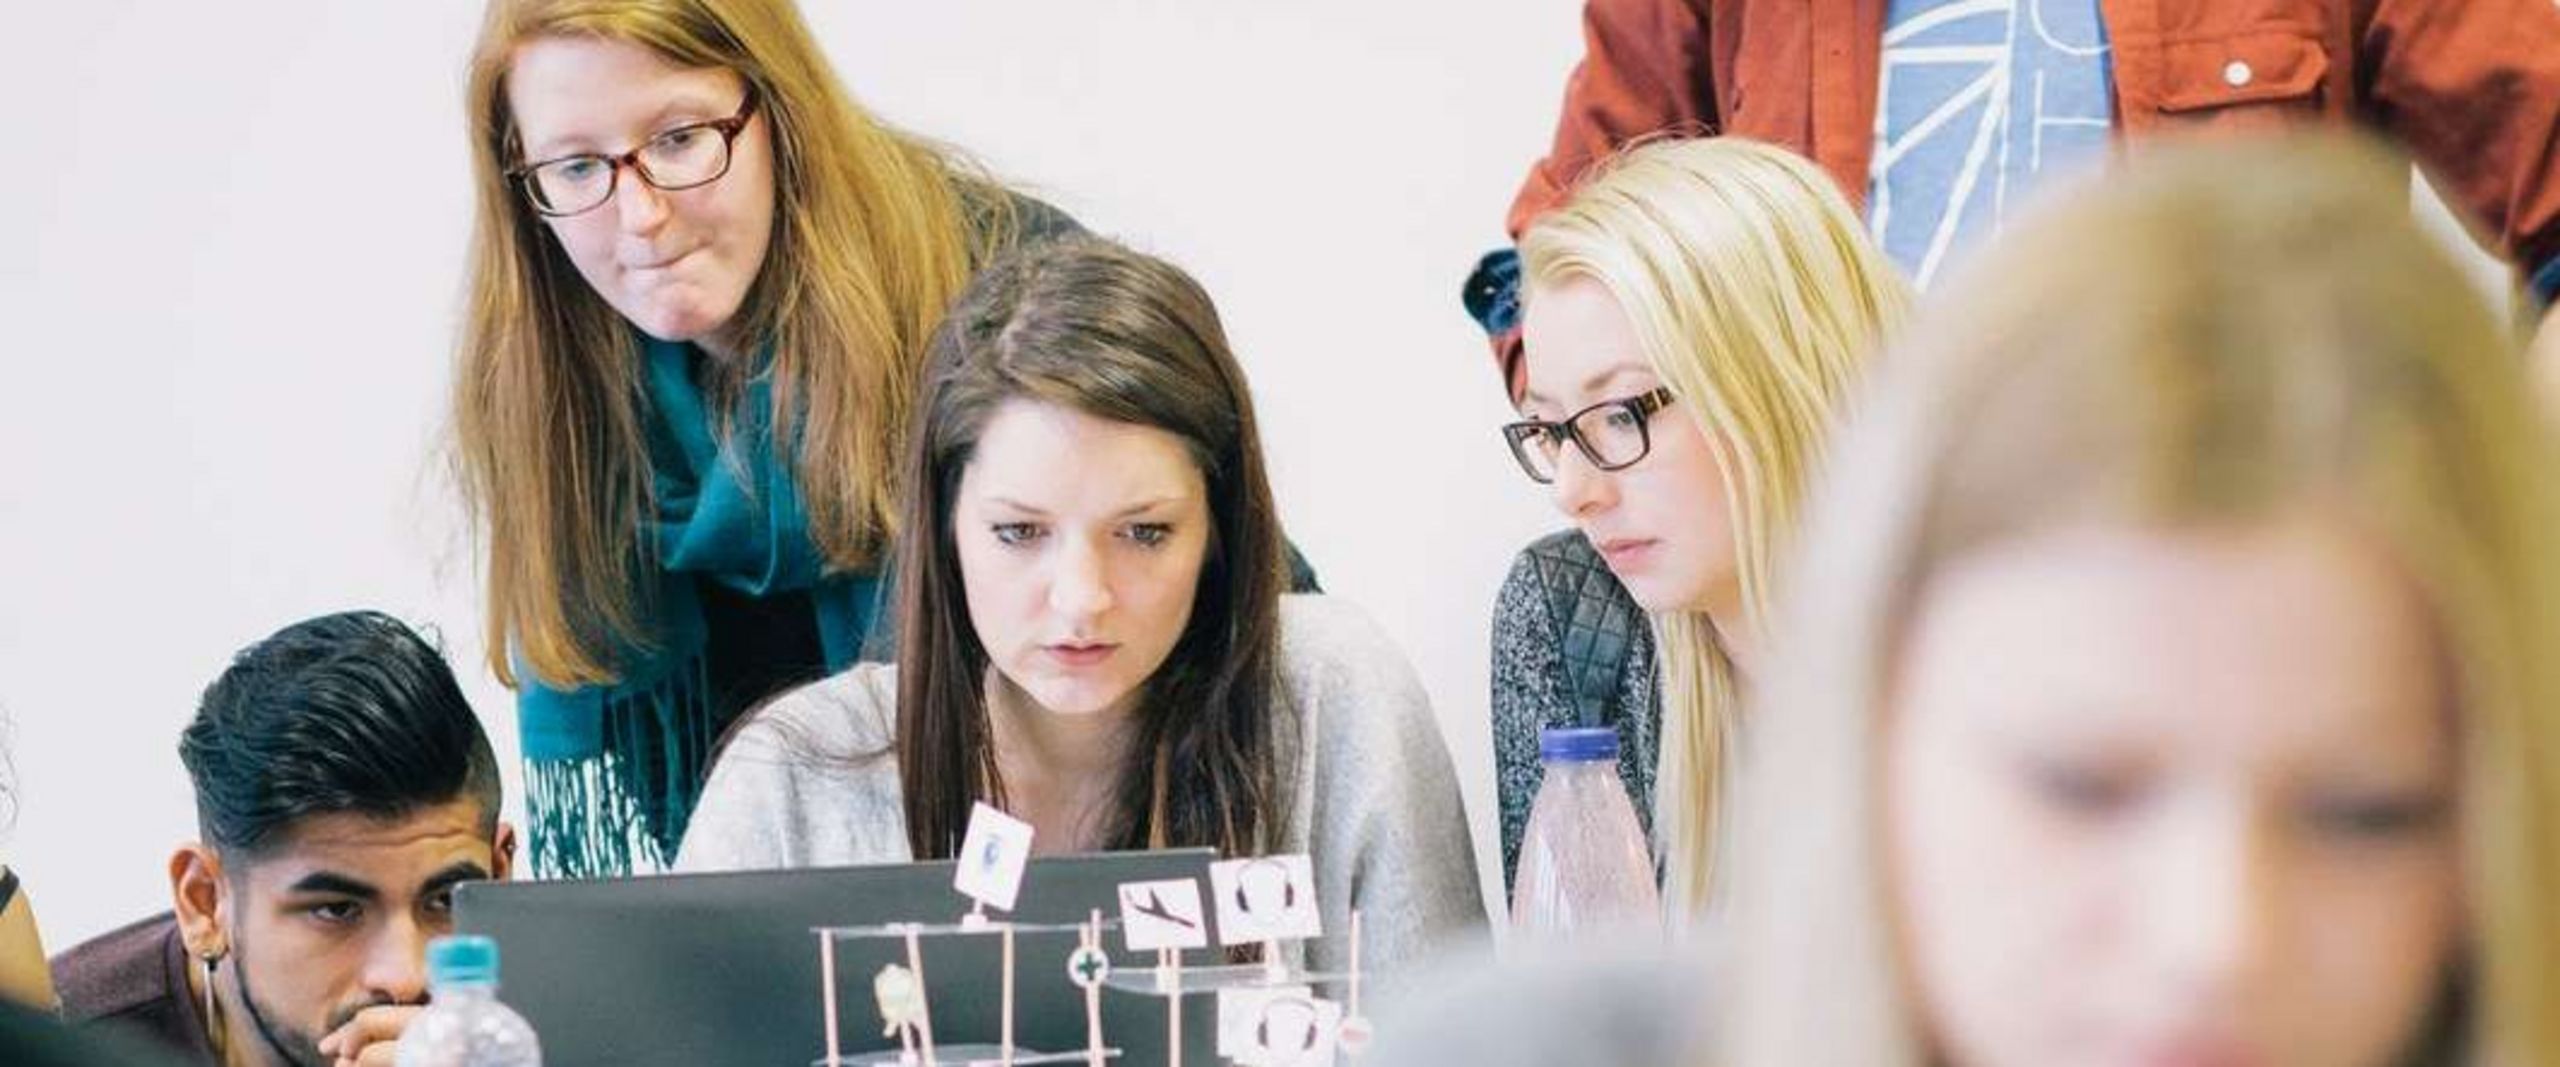 Auf dem Bild ist eine Gruppe Studierender zu sehen, die sich rund um einen Laptop positionieren und nachdenklich aussehen. Im Vordergrund sitzt eine Studentin vor einem roten Laptop. Der Vordergrund ist unscharf. 